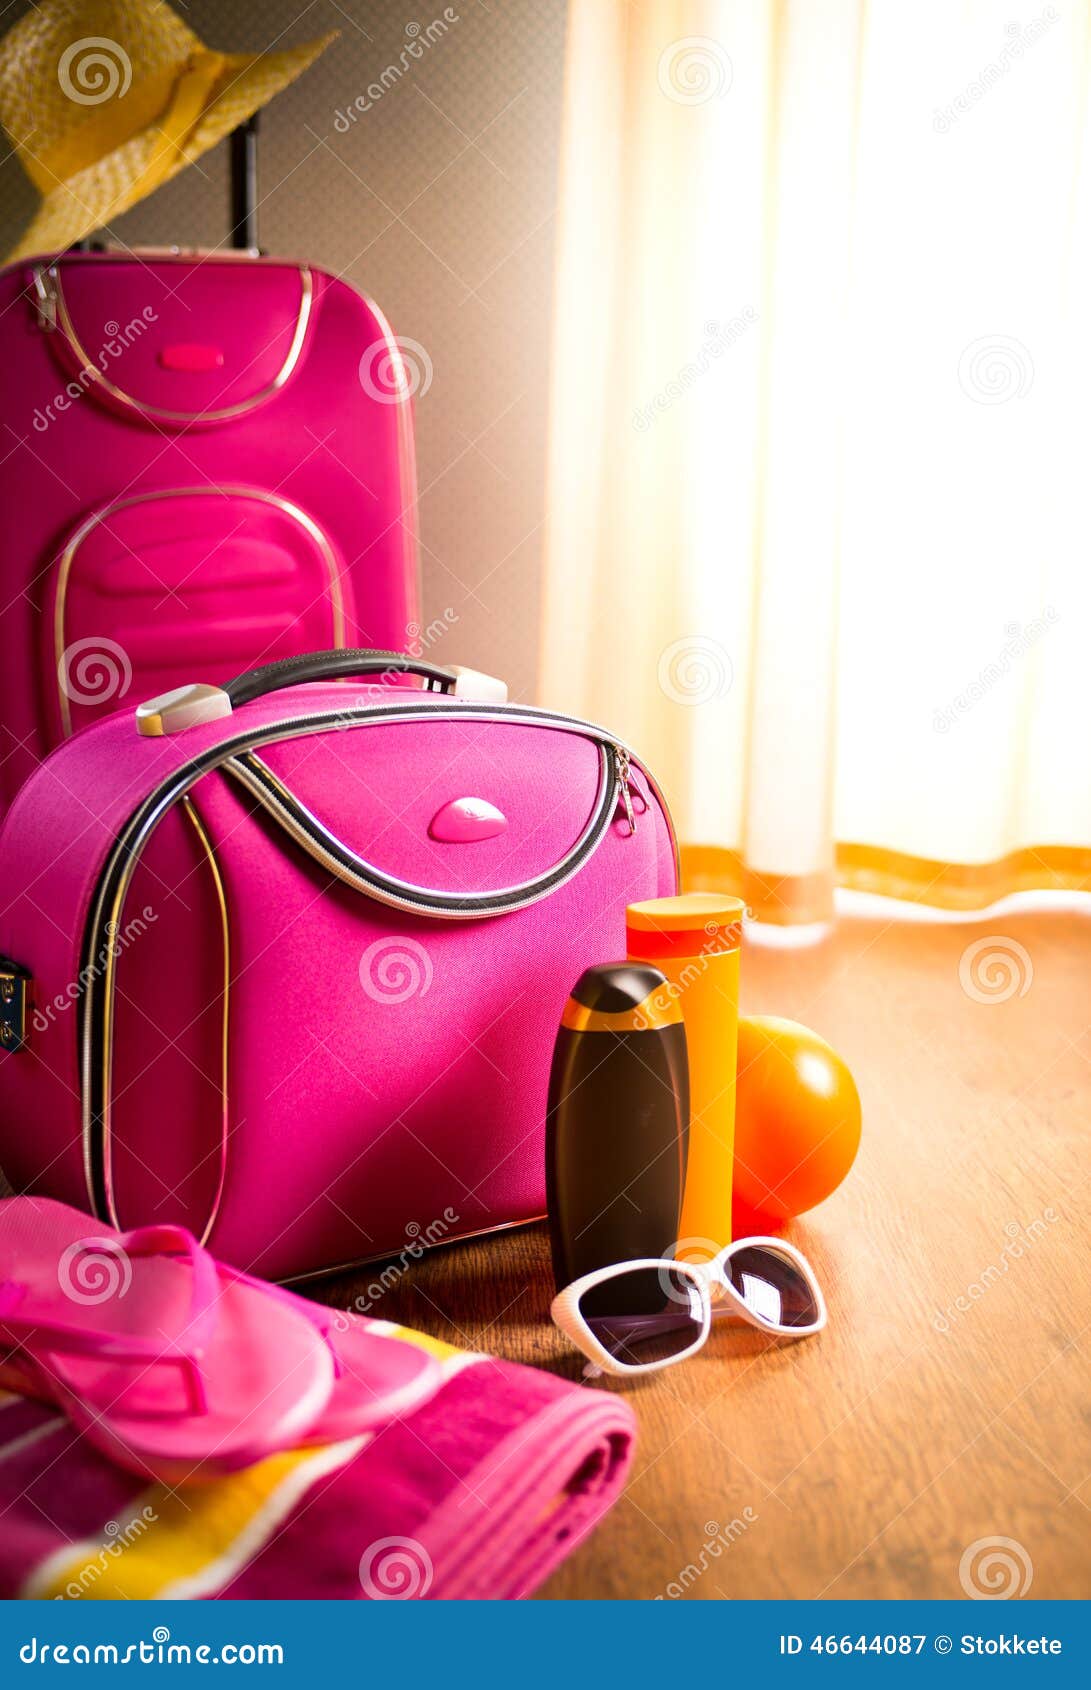 De zomervakanties verpakking. De zomervakanties die met roze karretjegeval, zonnebril en zonroom inpakken